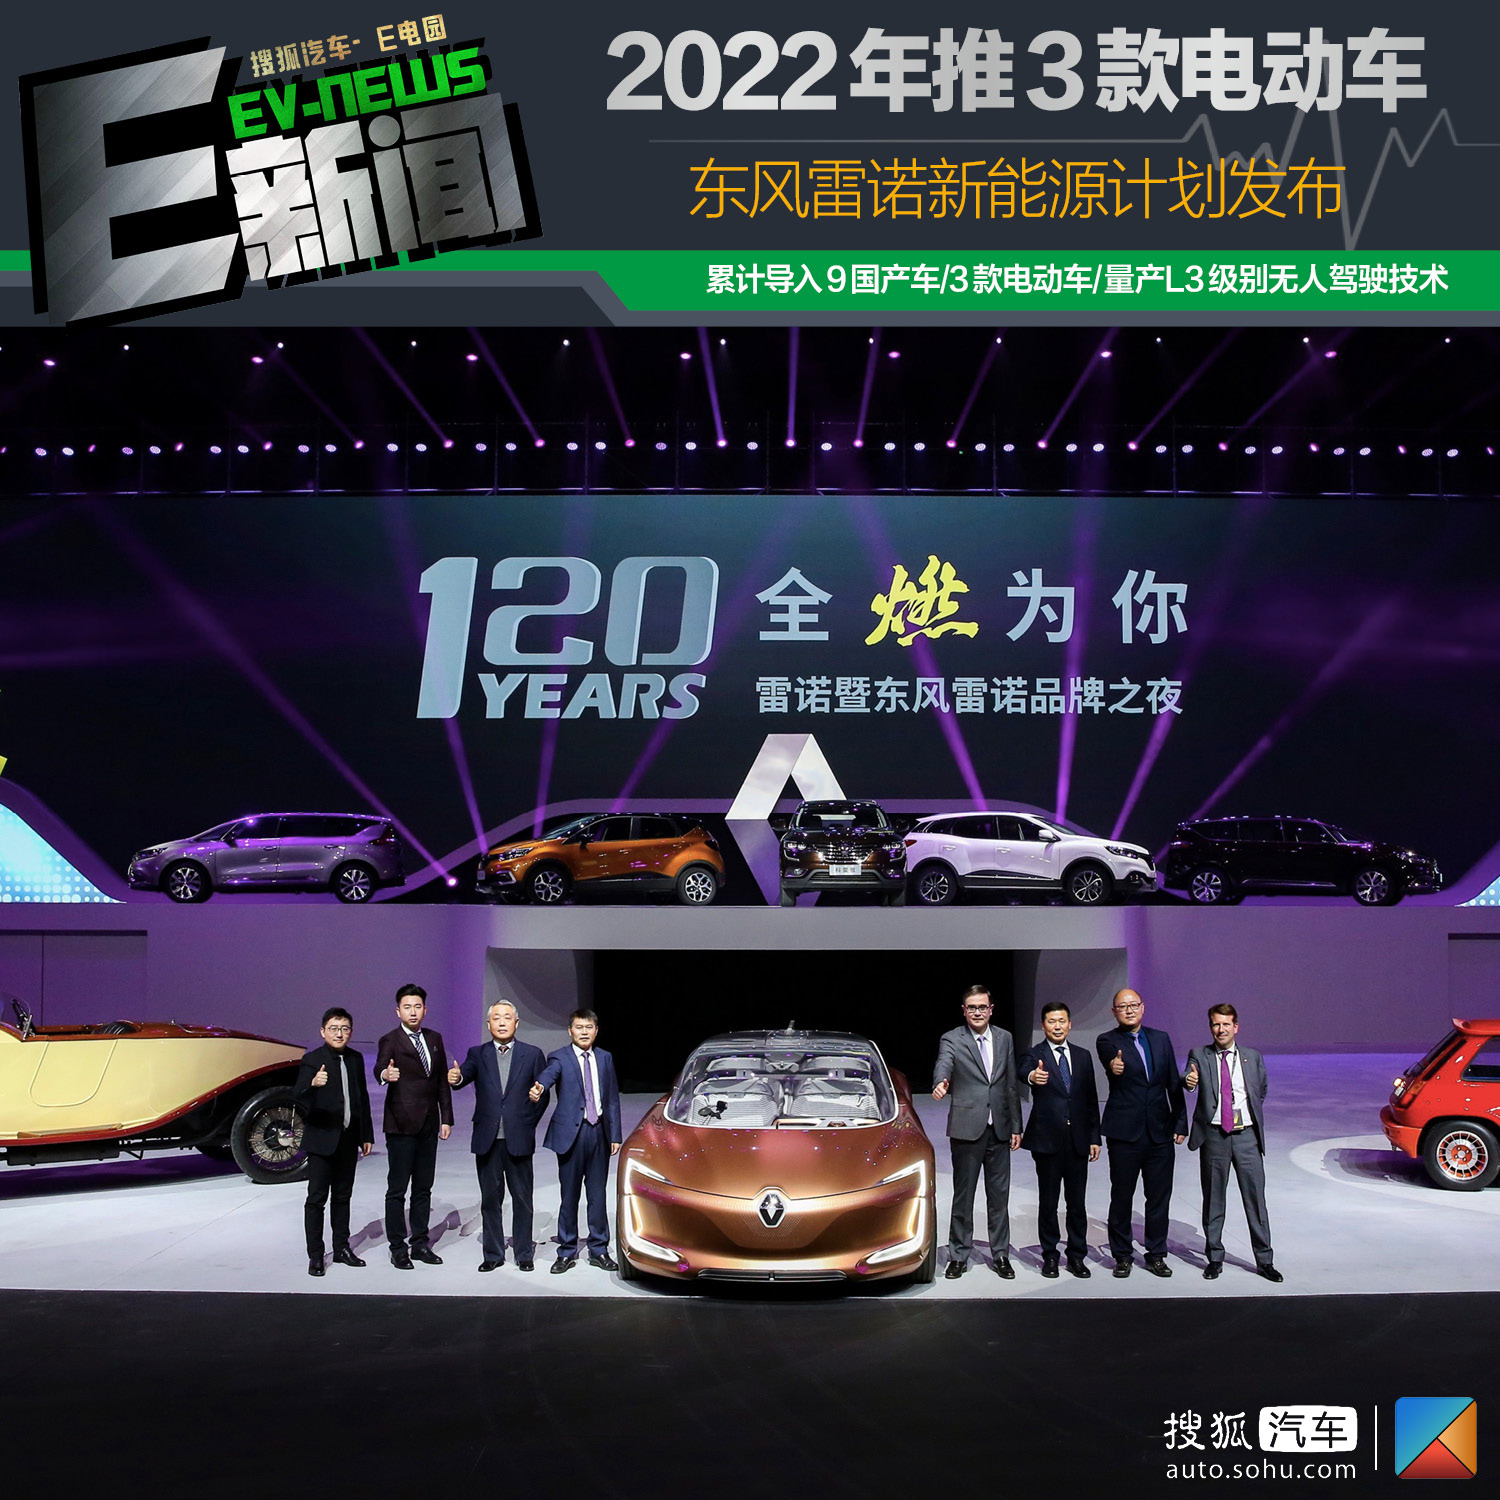 2022年推出3款电动车 东风雷诺新能源计划发布